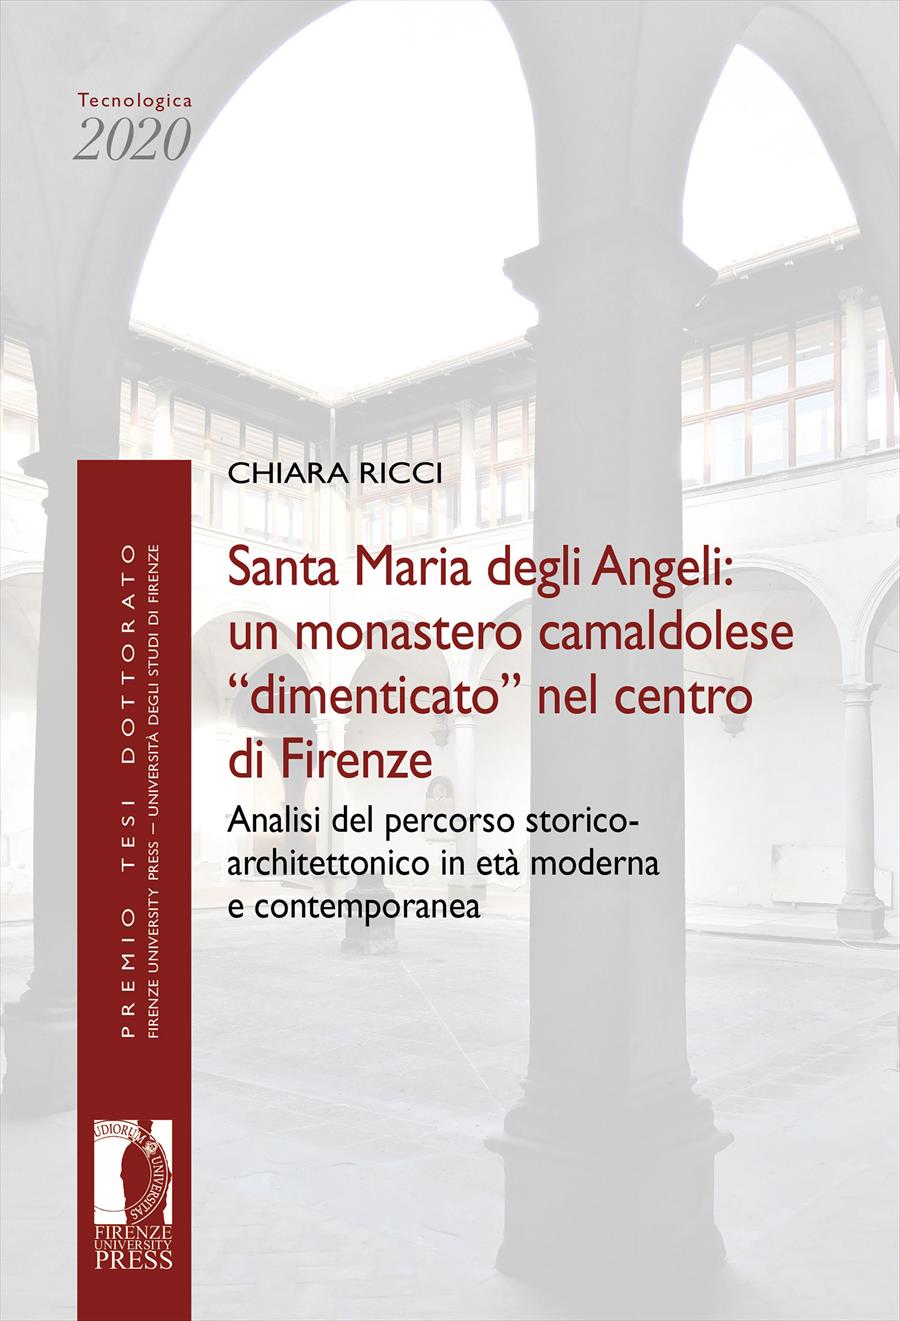 Santa Maria degli Angeli: un monastero camaldolese “dimenticato” nel centro di Firenze